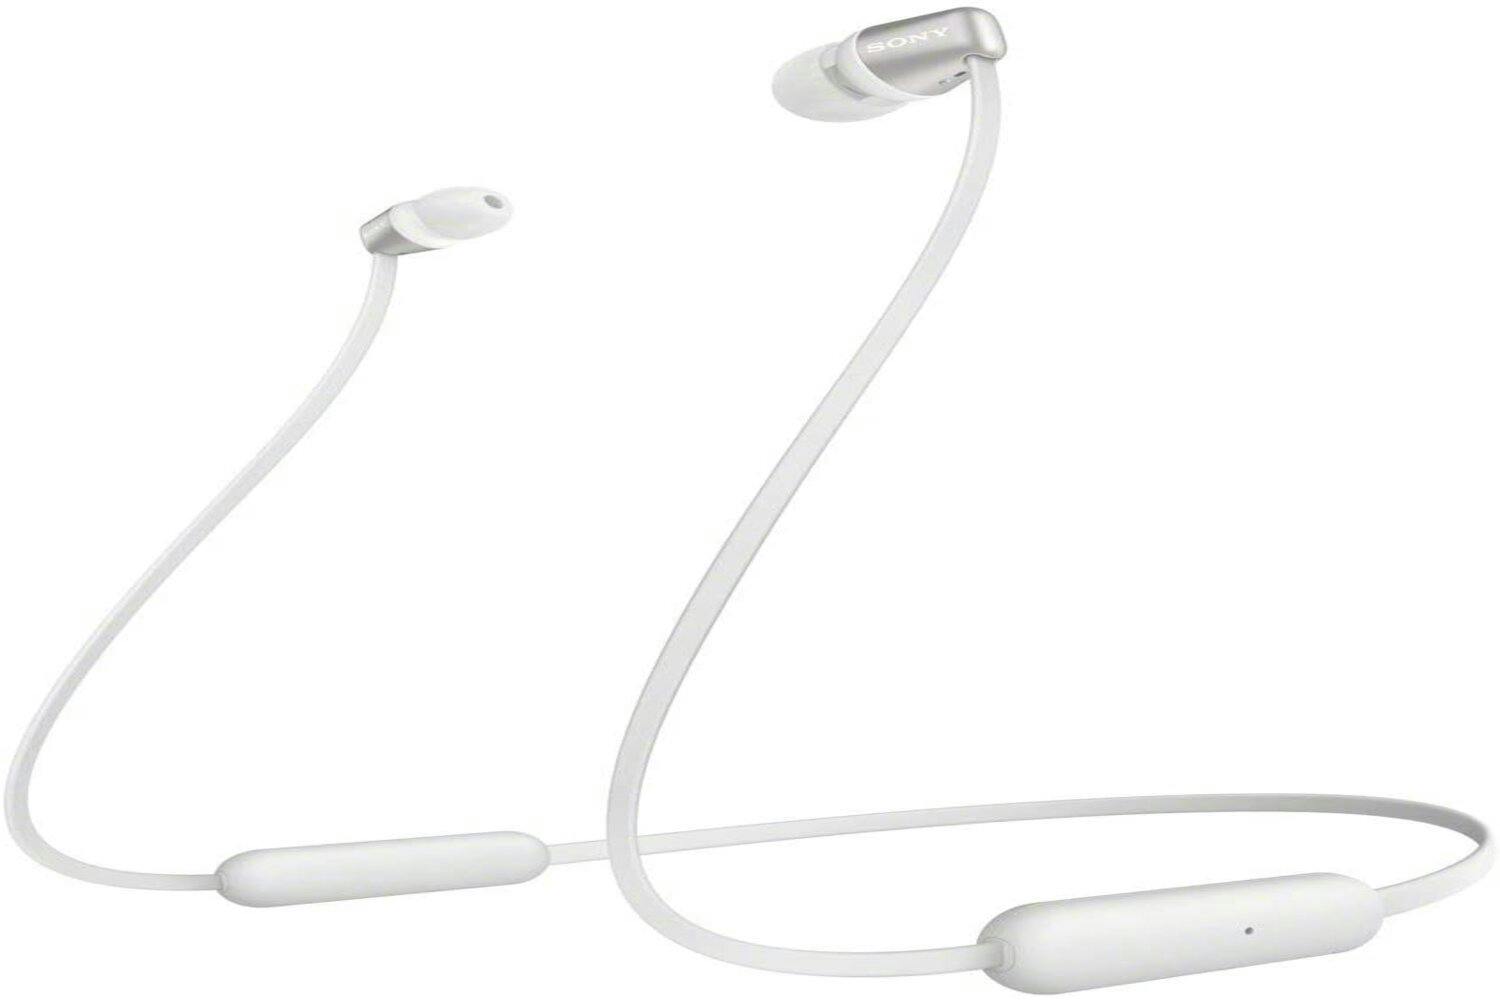 Sony WI-C310 In-Ear Wireless Headphones | White